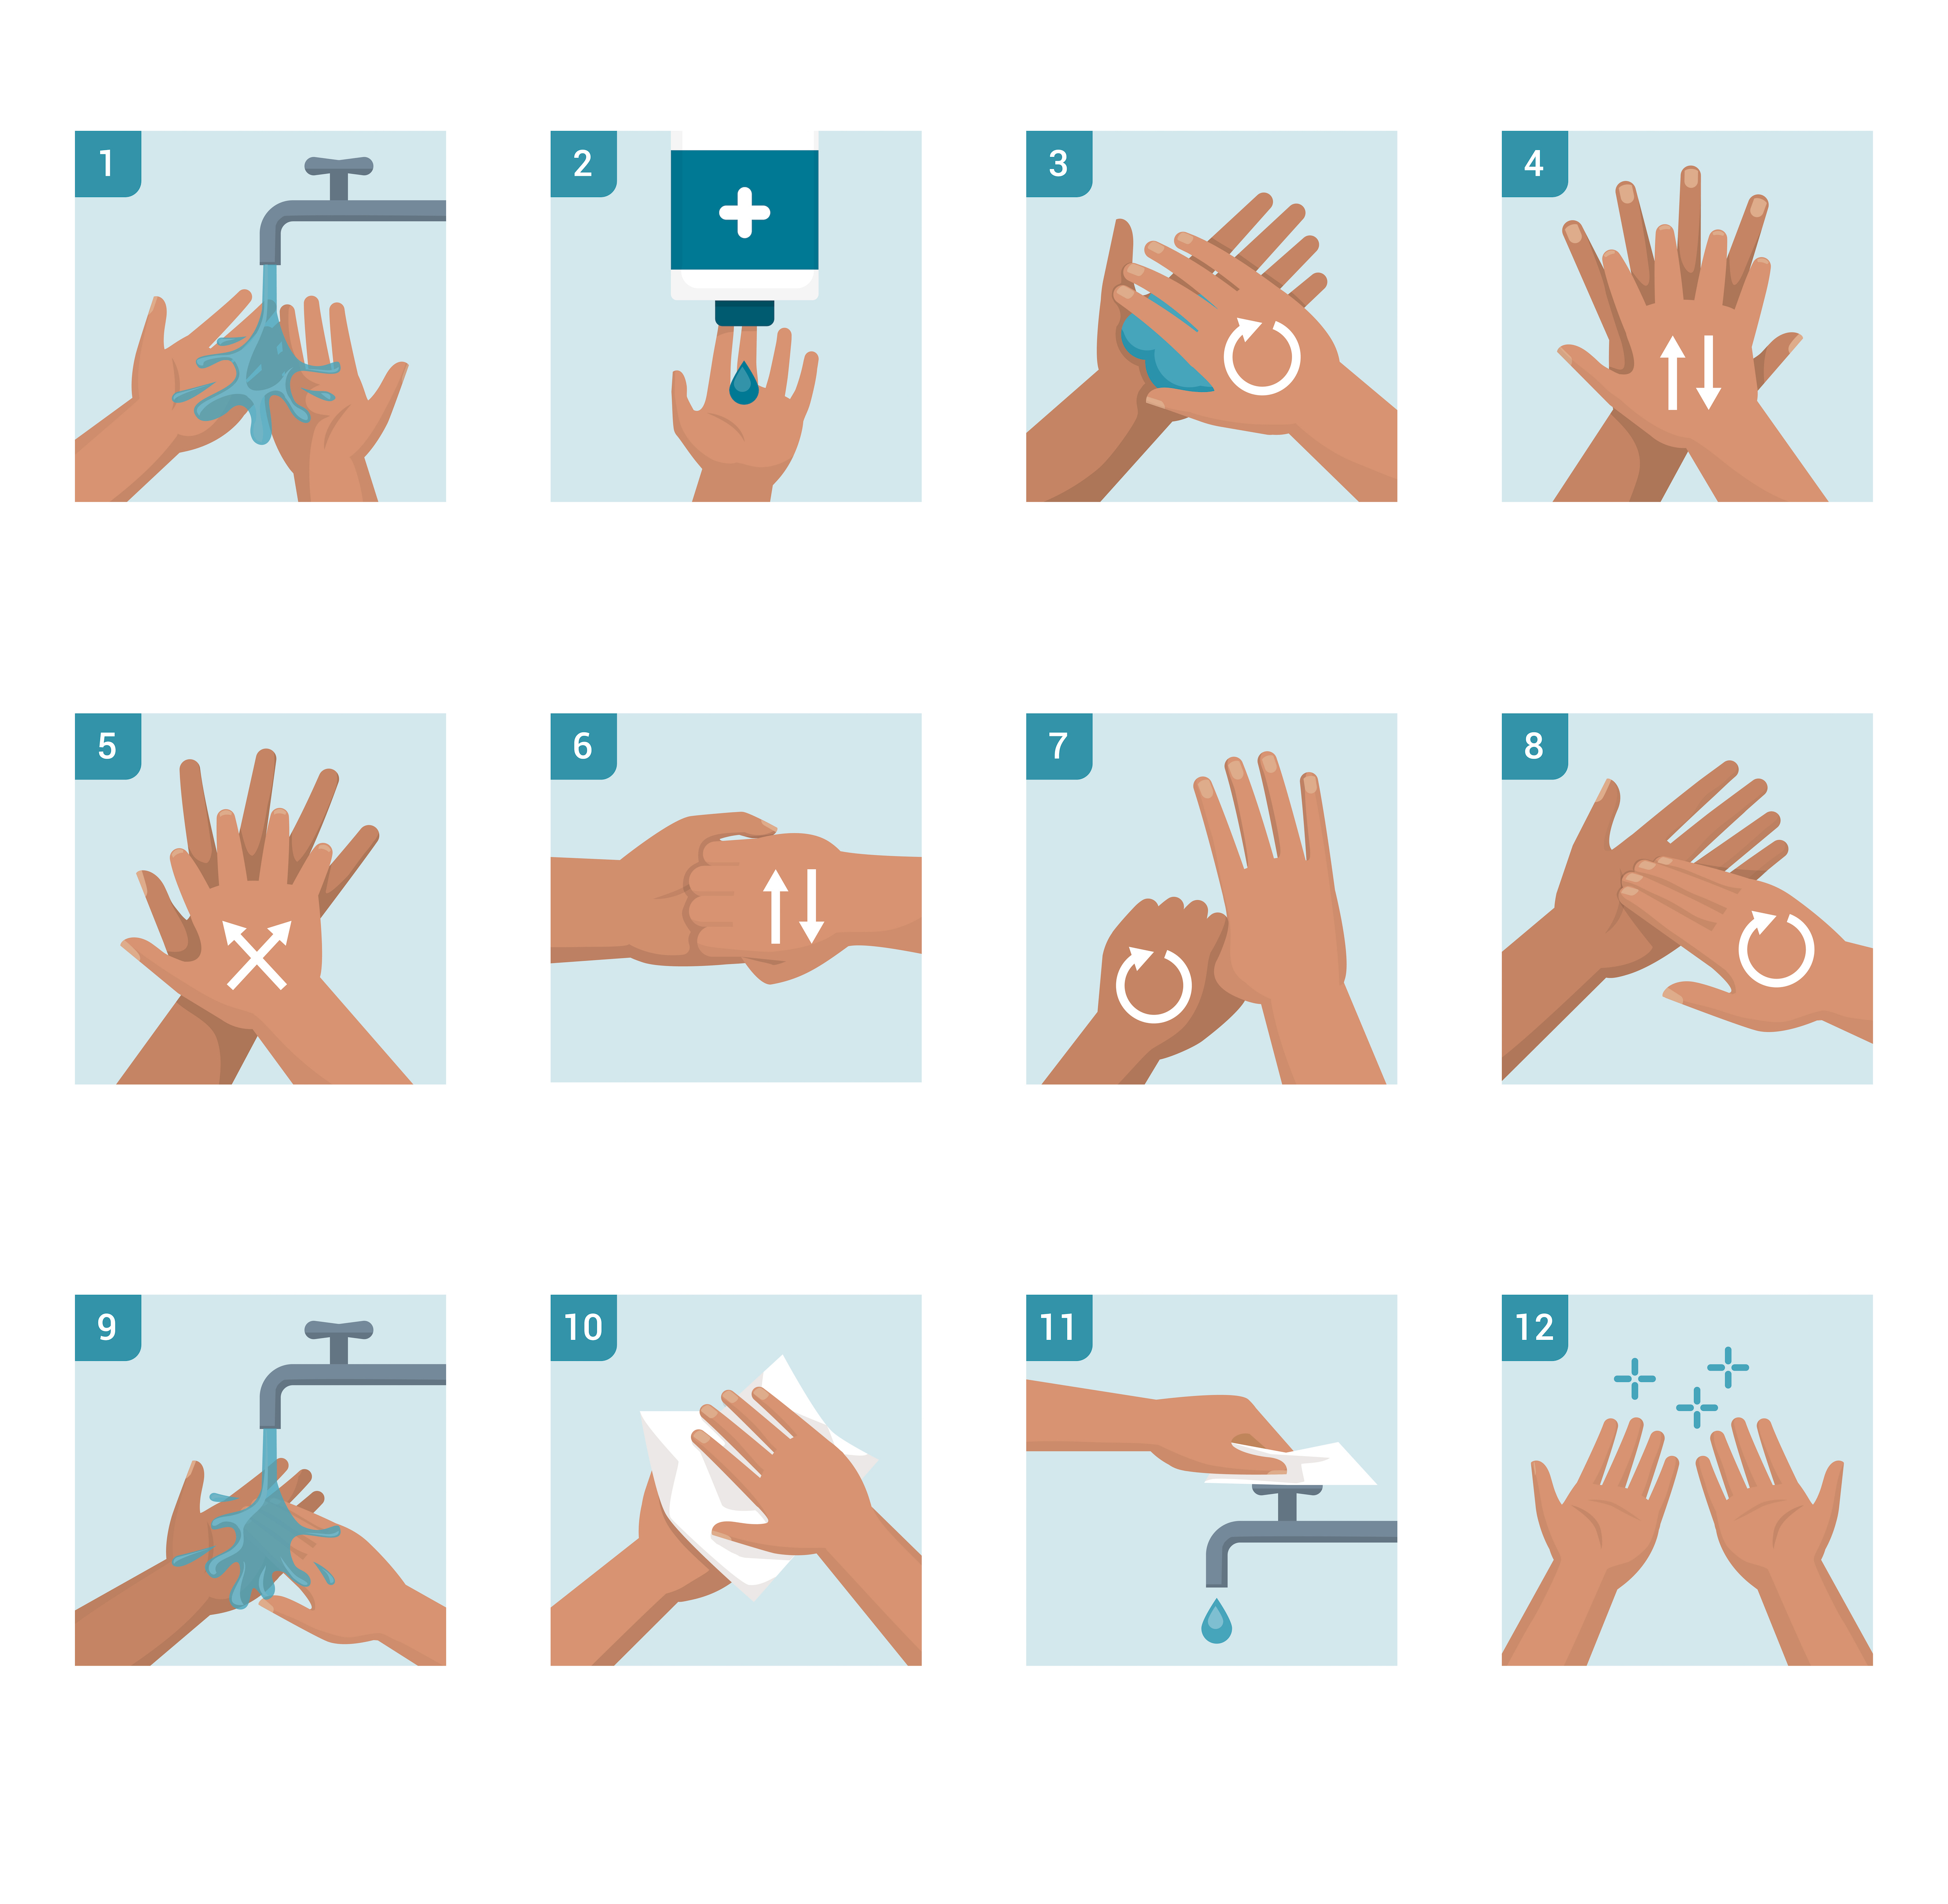 Schritt-für-Schritt-Anleitung zum richtigen Händewaschen